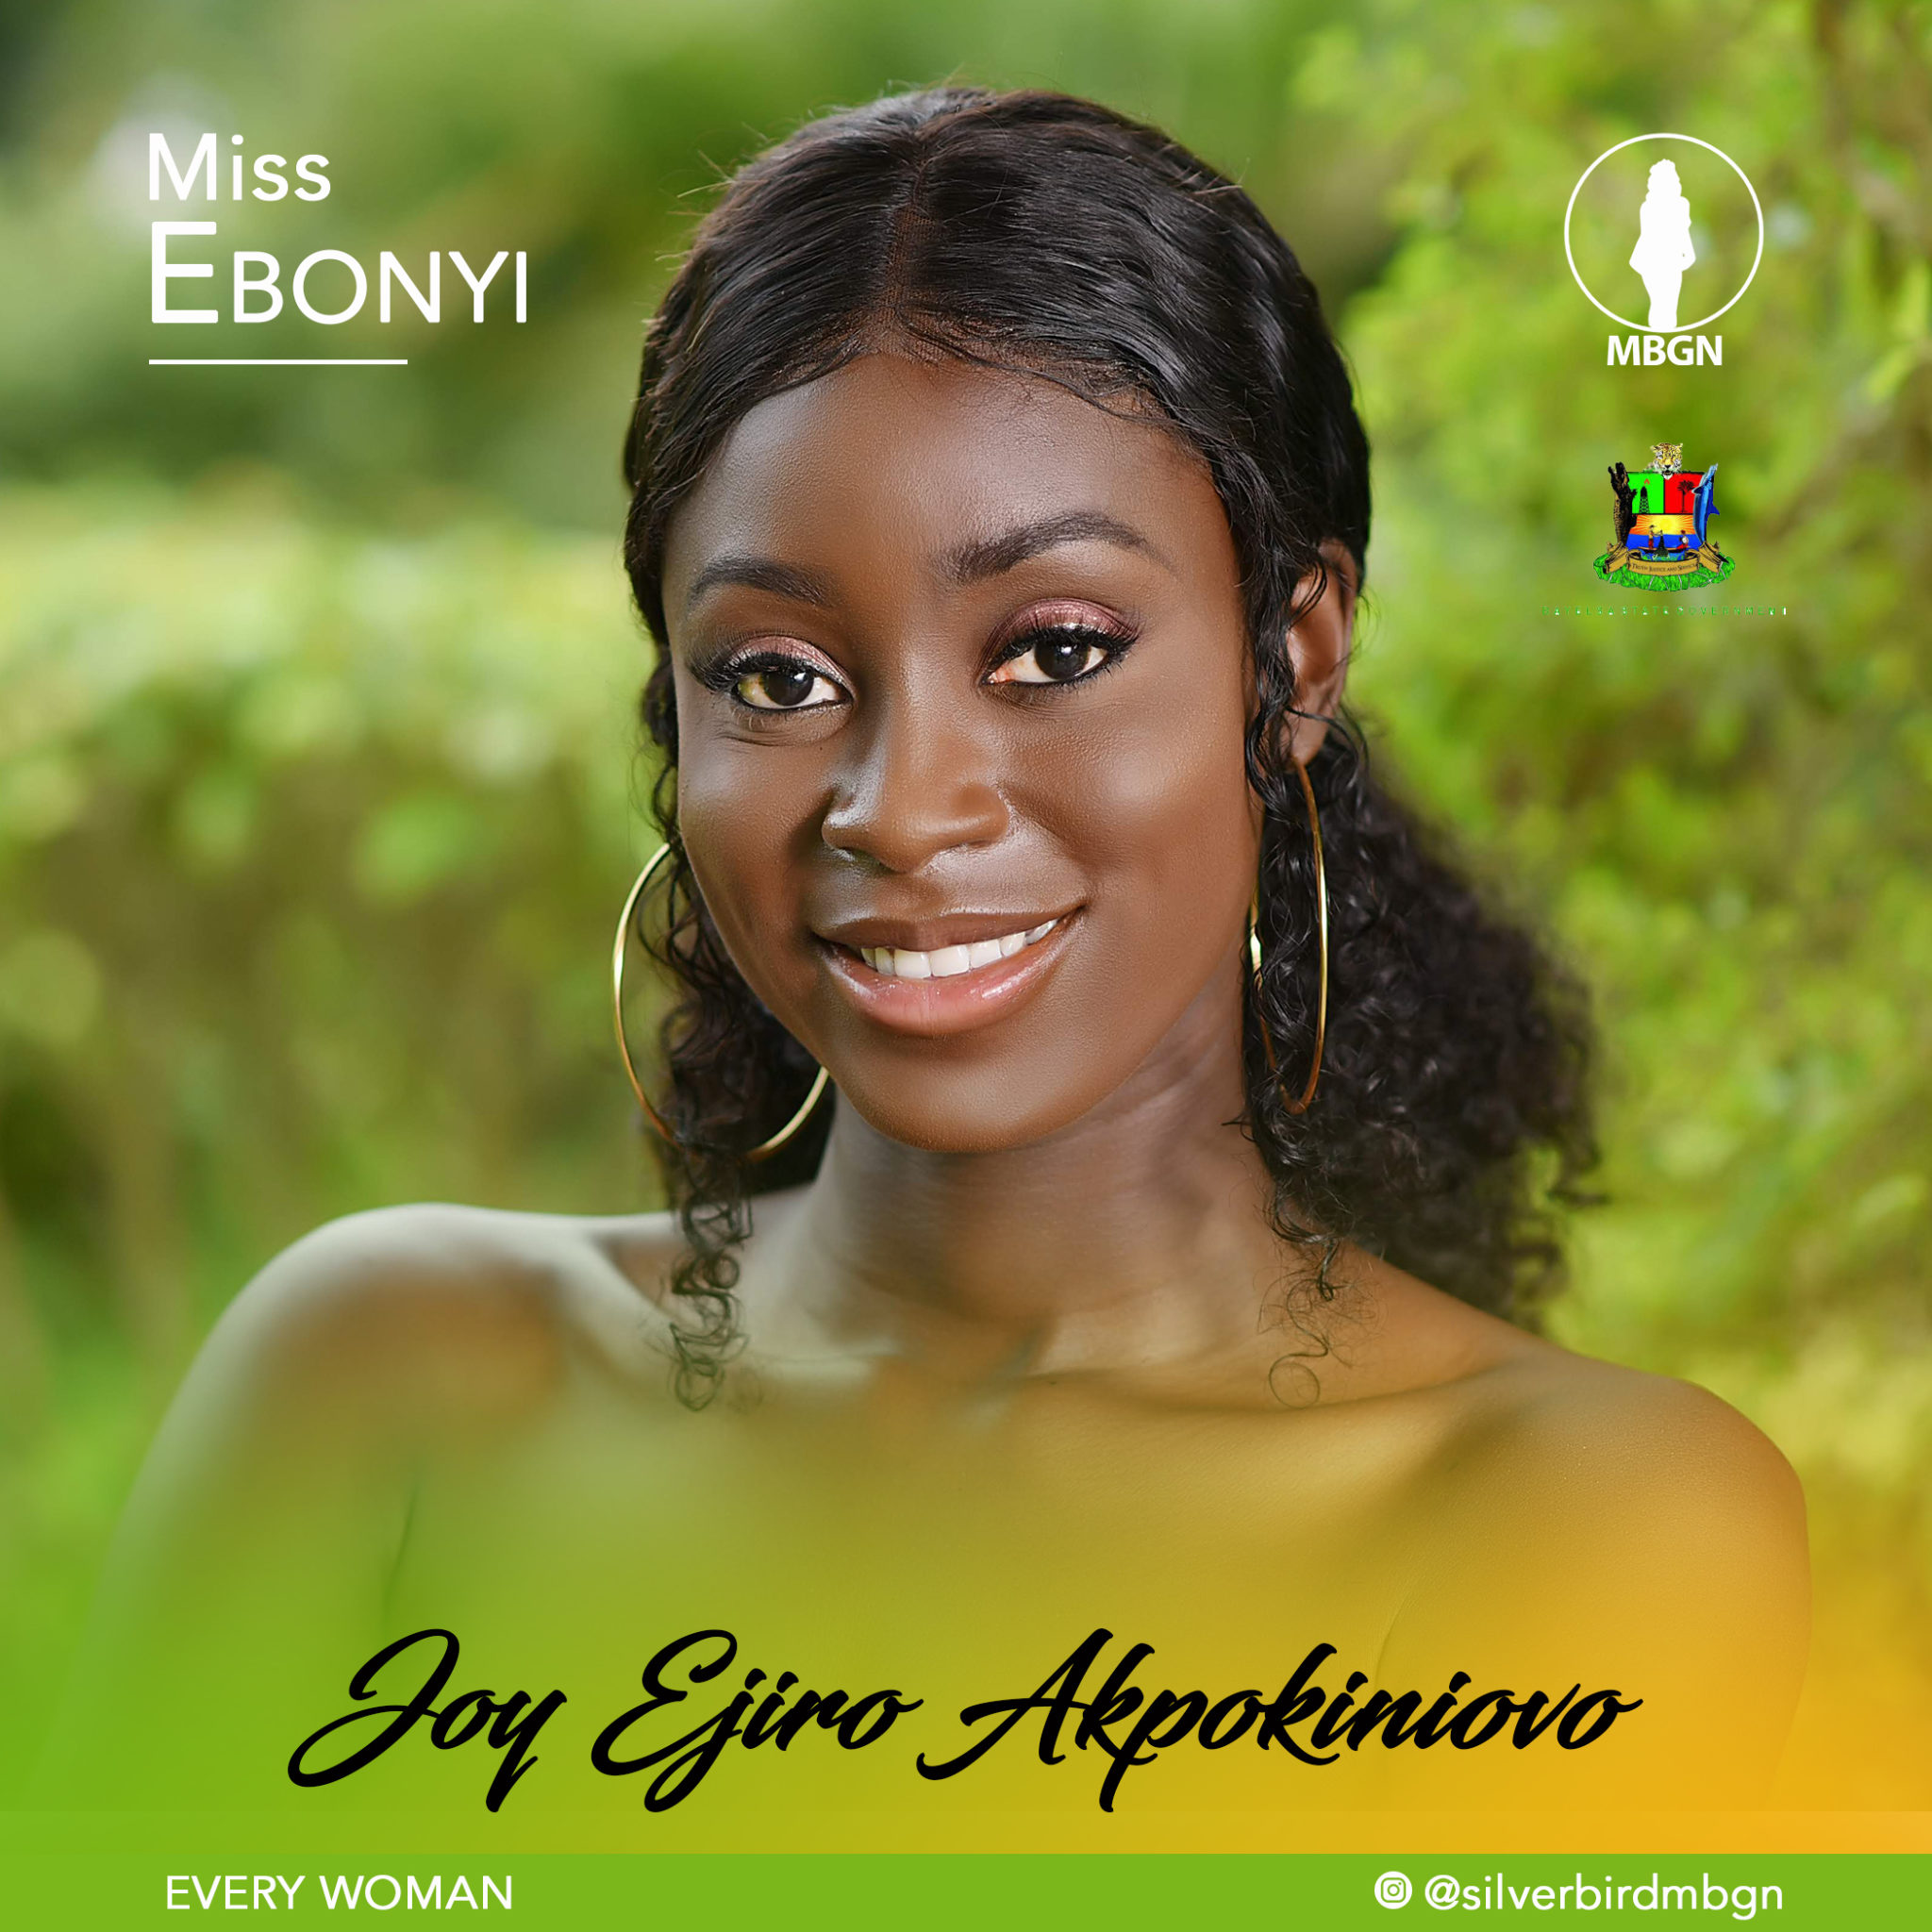 Miss Ebonyi MBGN 2019 Joy Ejiro Akpokiniovo